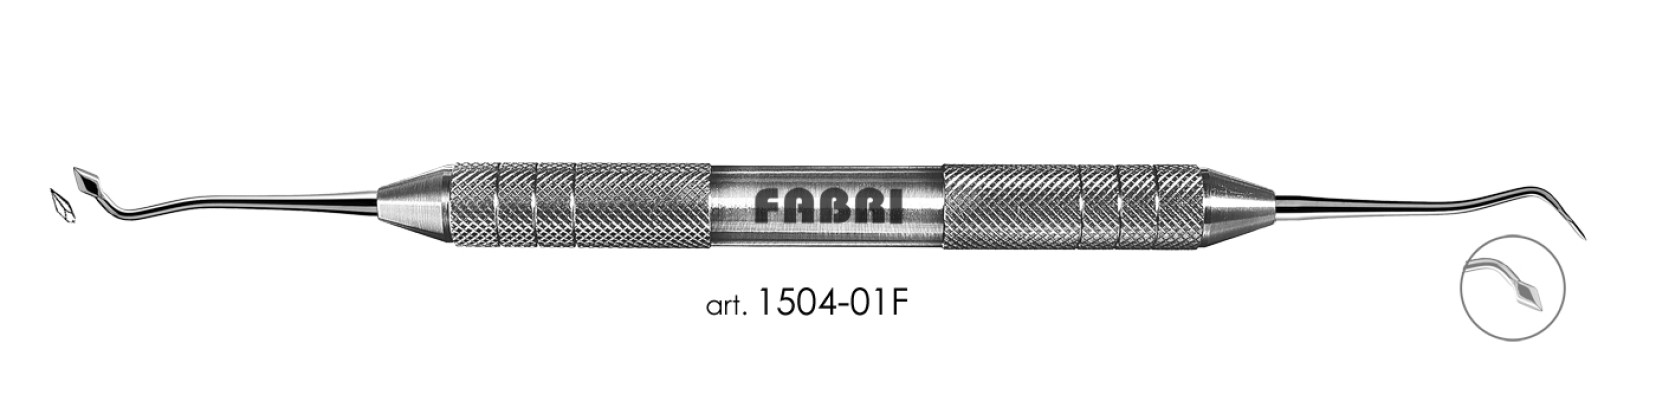 ФАБРИ Fabri  - Инструмент для моделирования (арт. 1504-01 F)